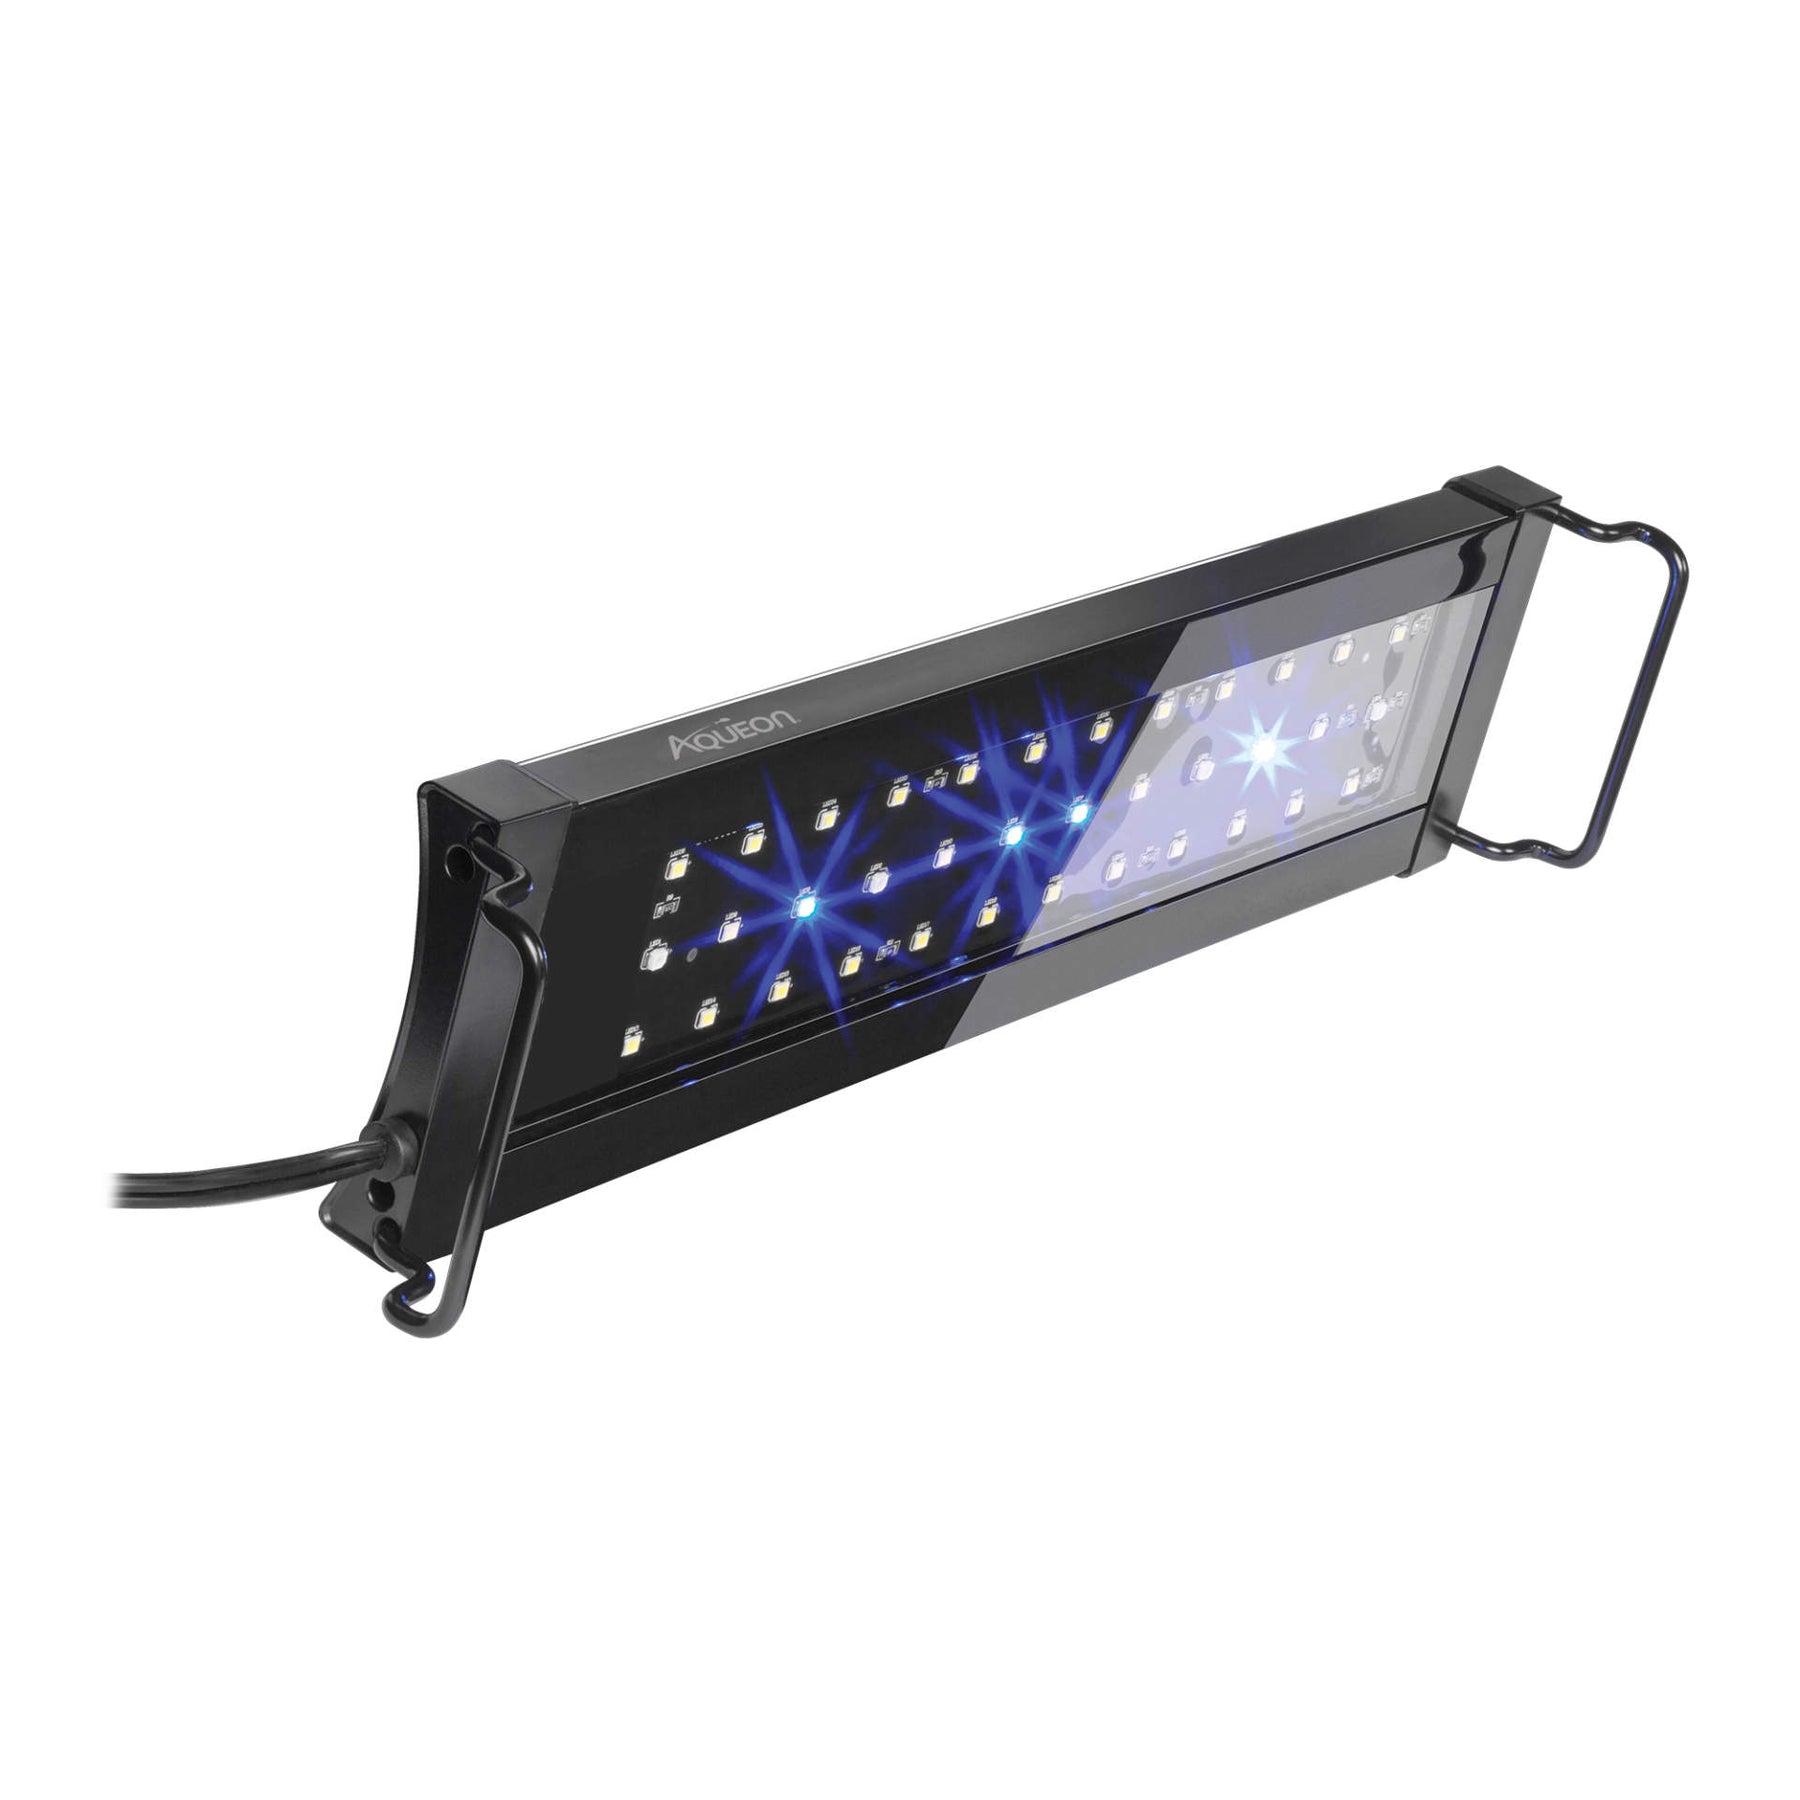 Aqueon - Light Fixture OptiBright LED